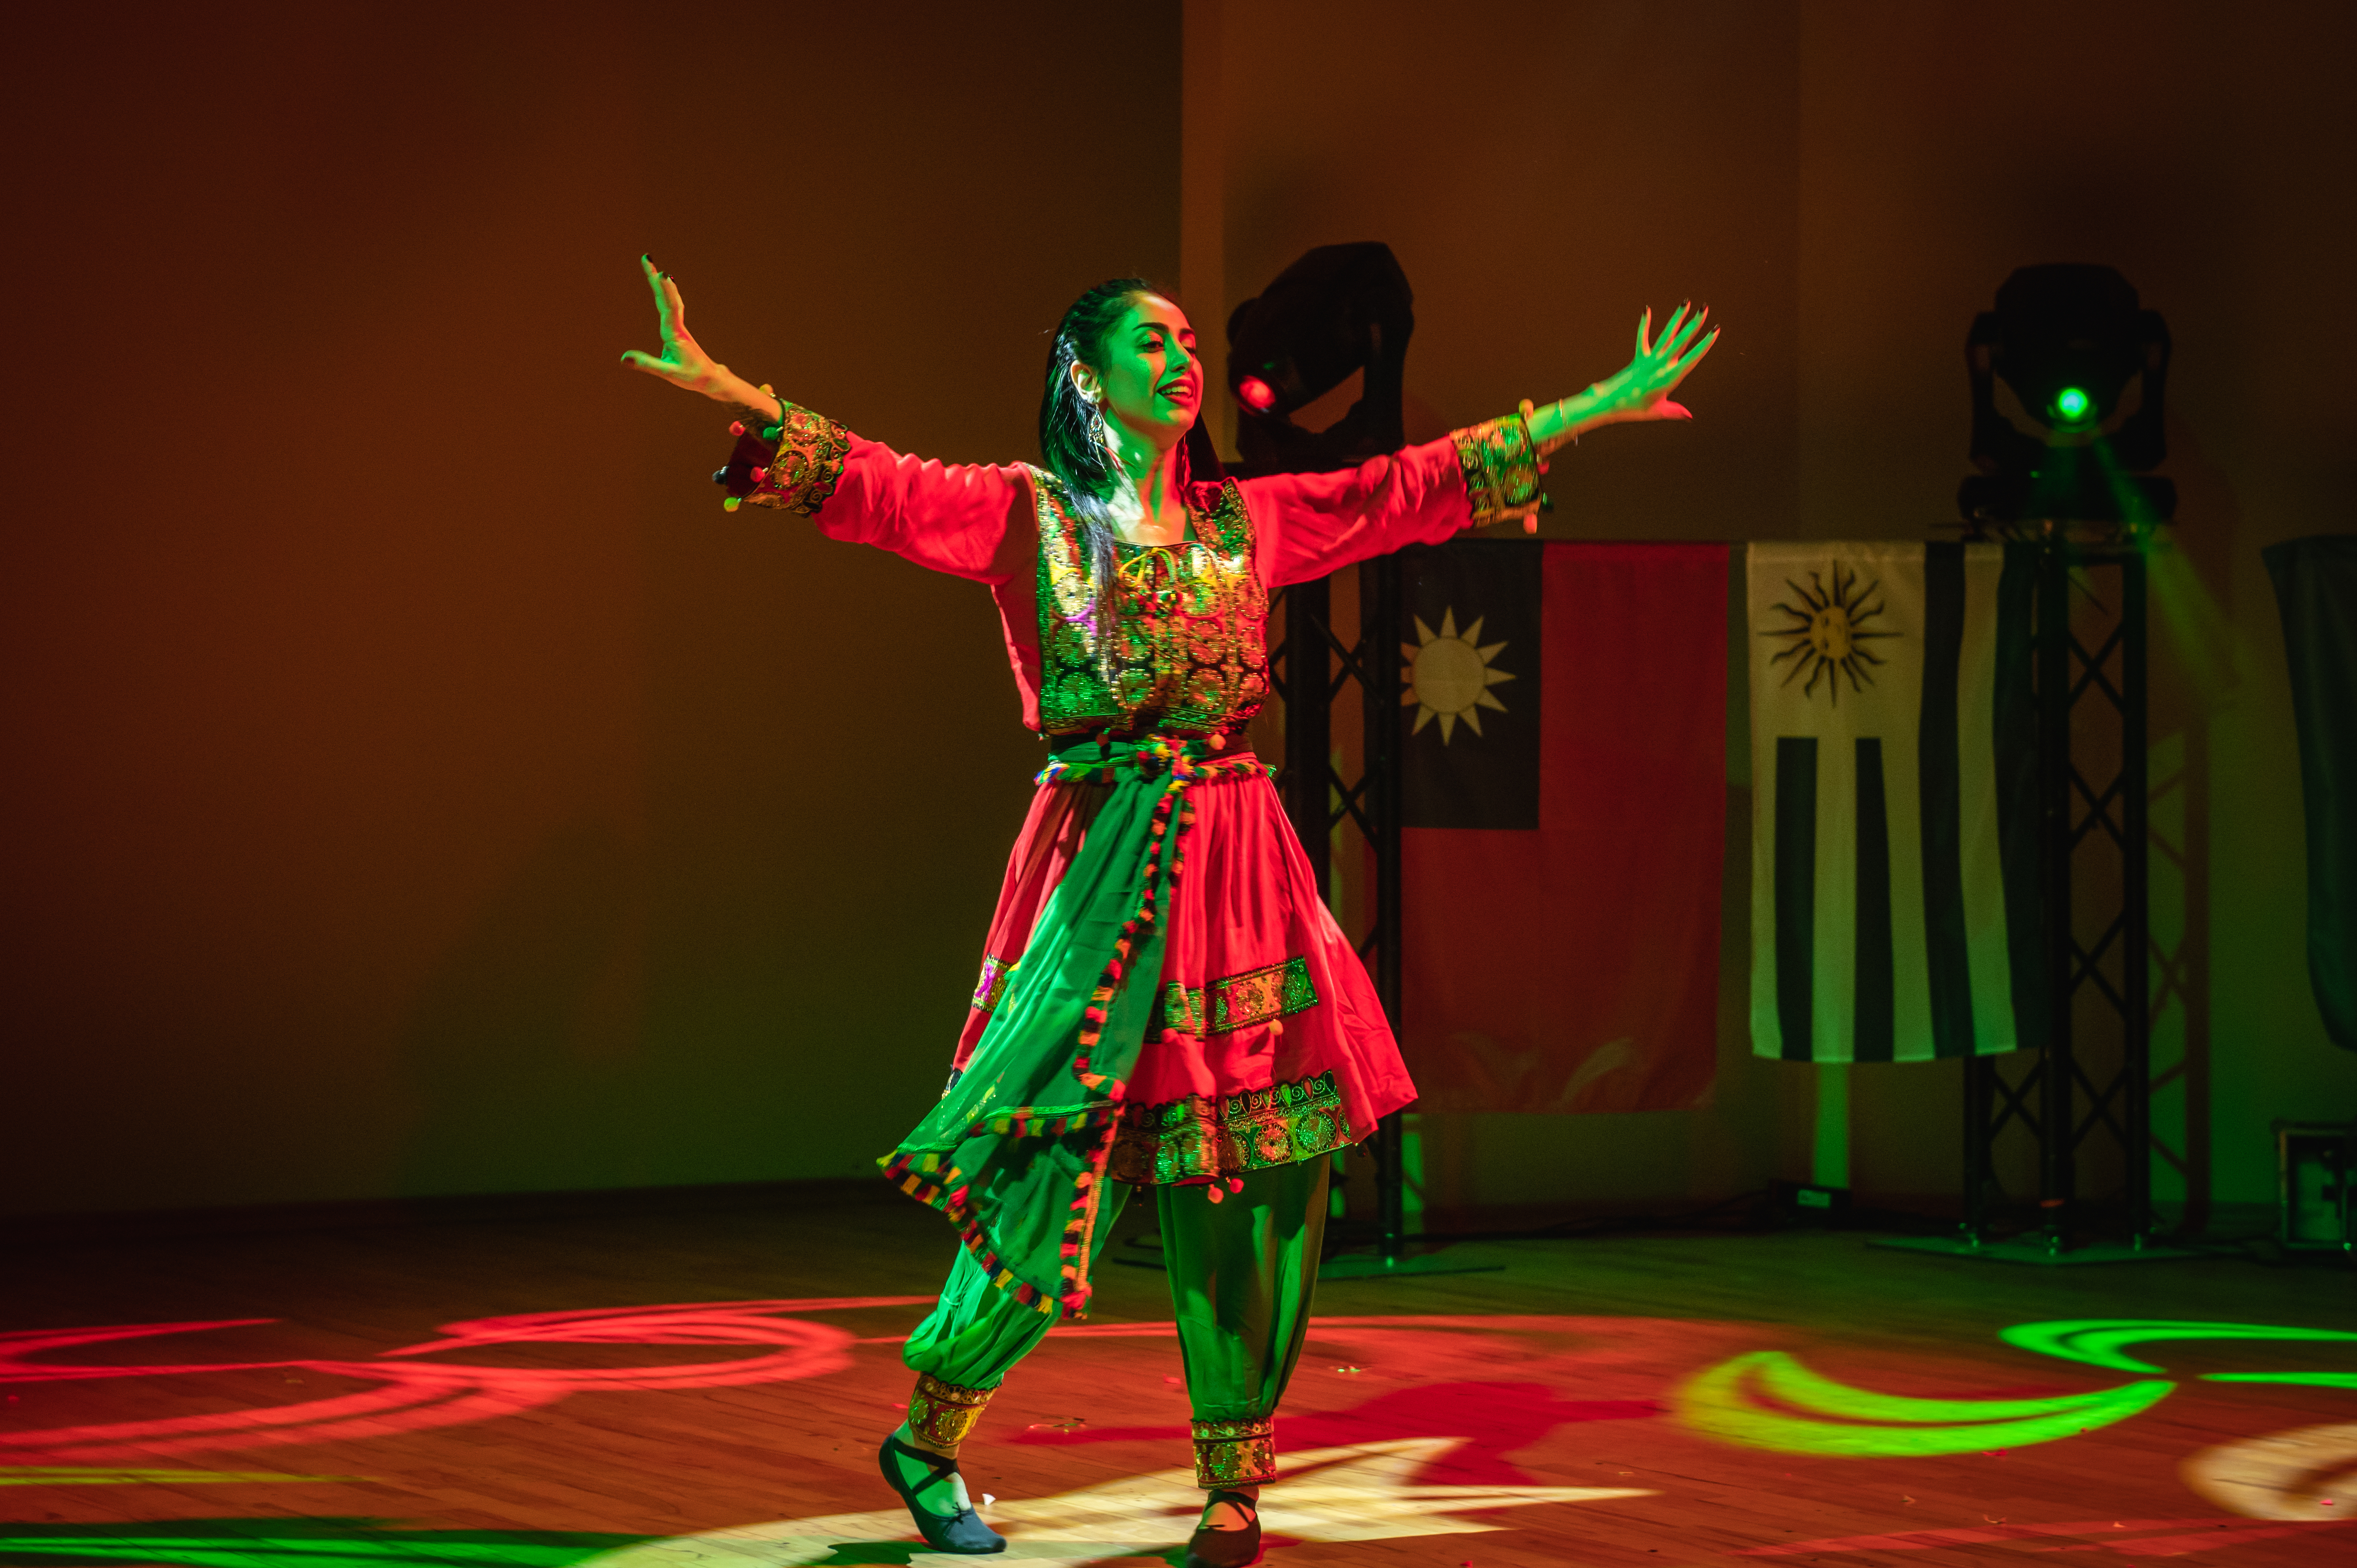 Studentka z Persji Sadaf Afshar tańczy na scenie perski taniec ubrana w tradycyjny perski strój.